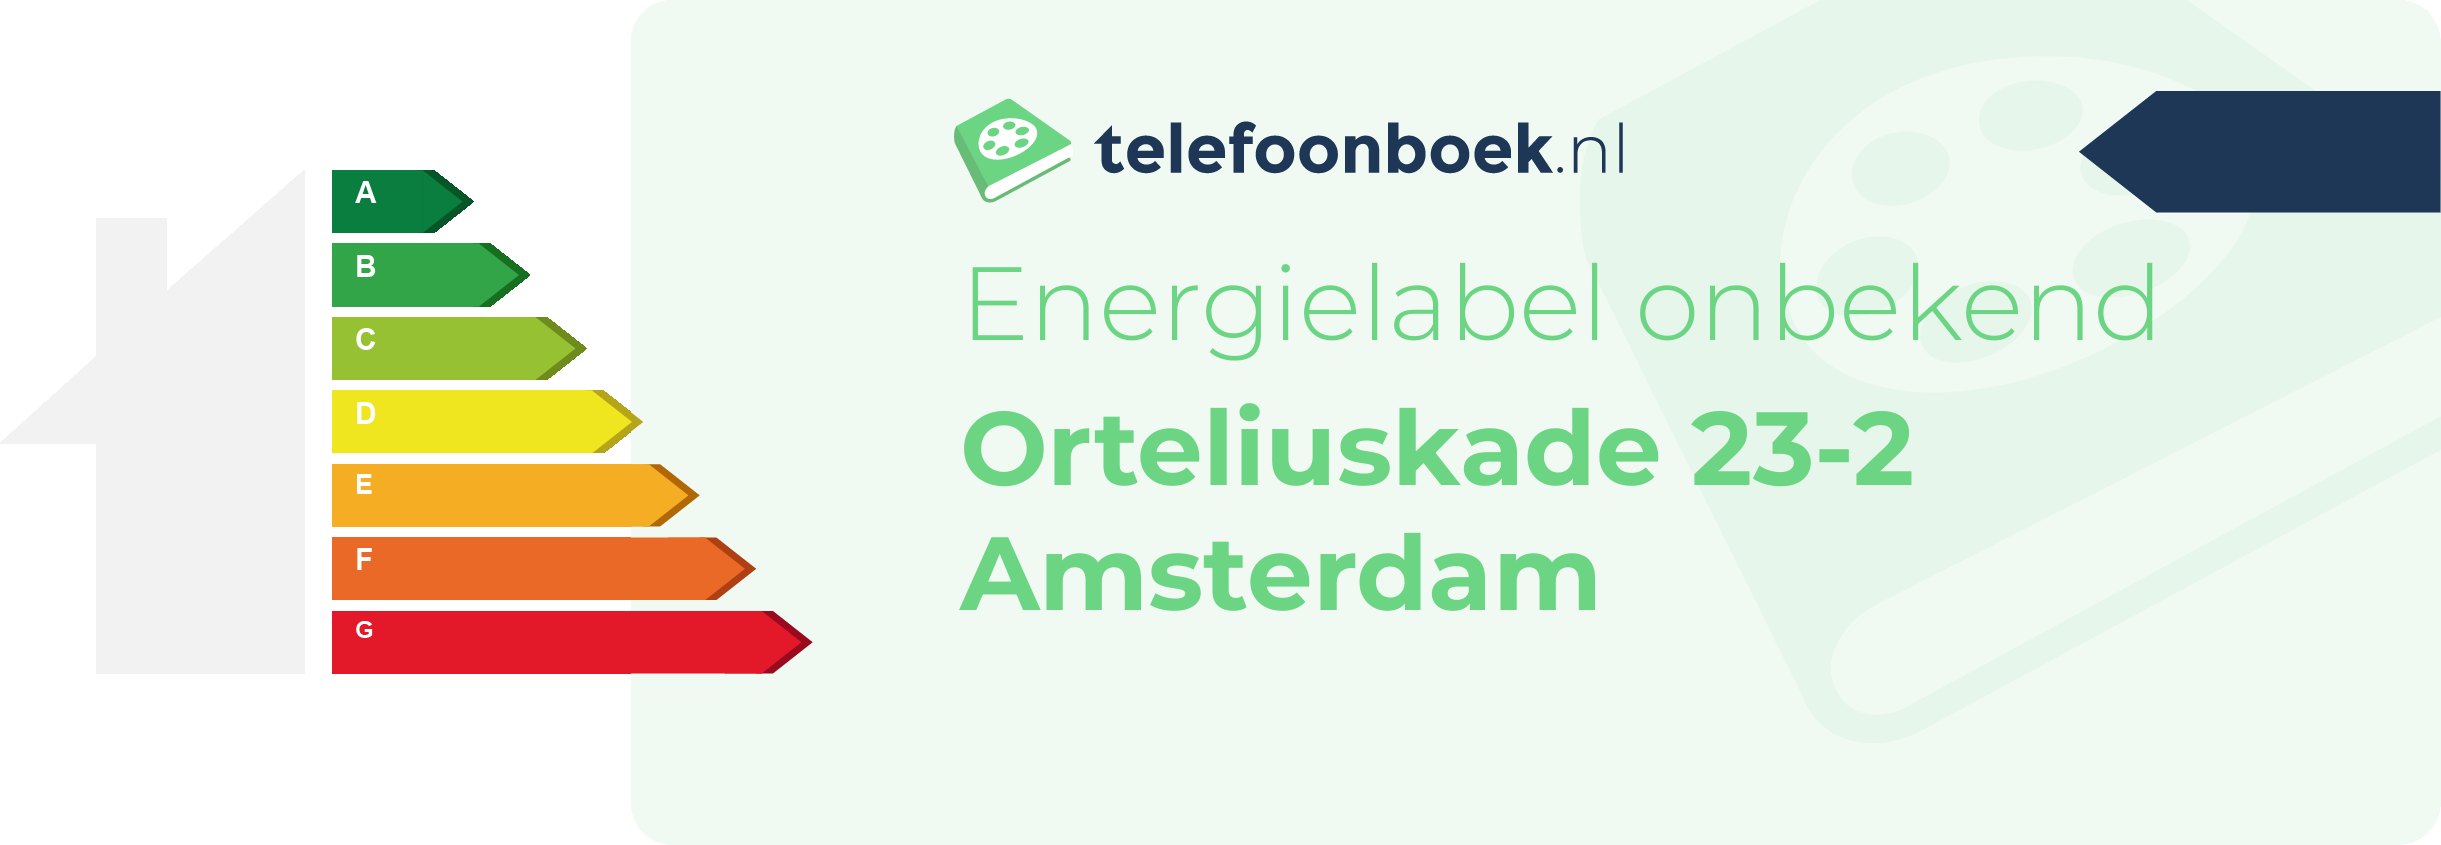 Energielabel Orteliuskade 23-2 Amsterdam